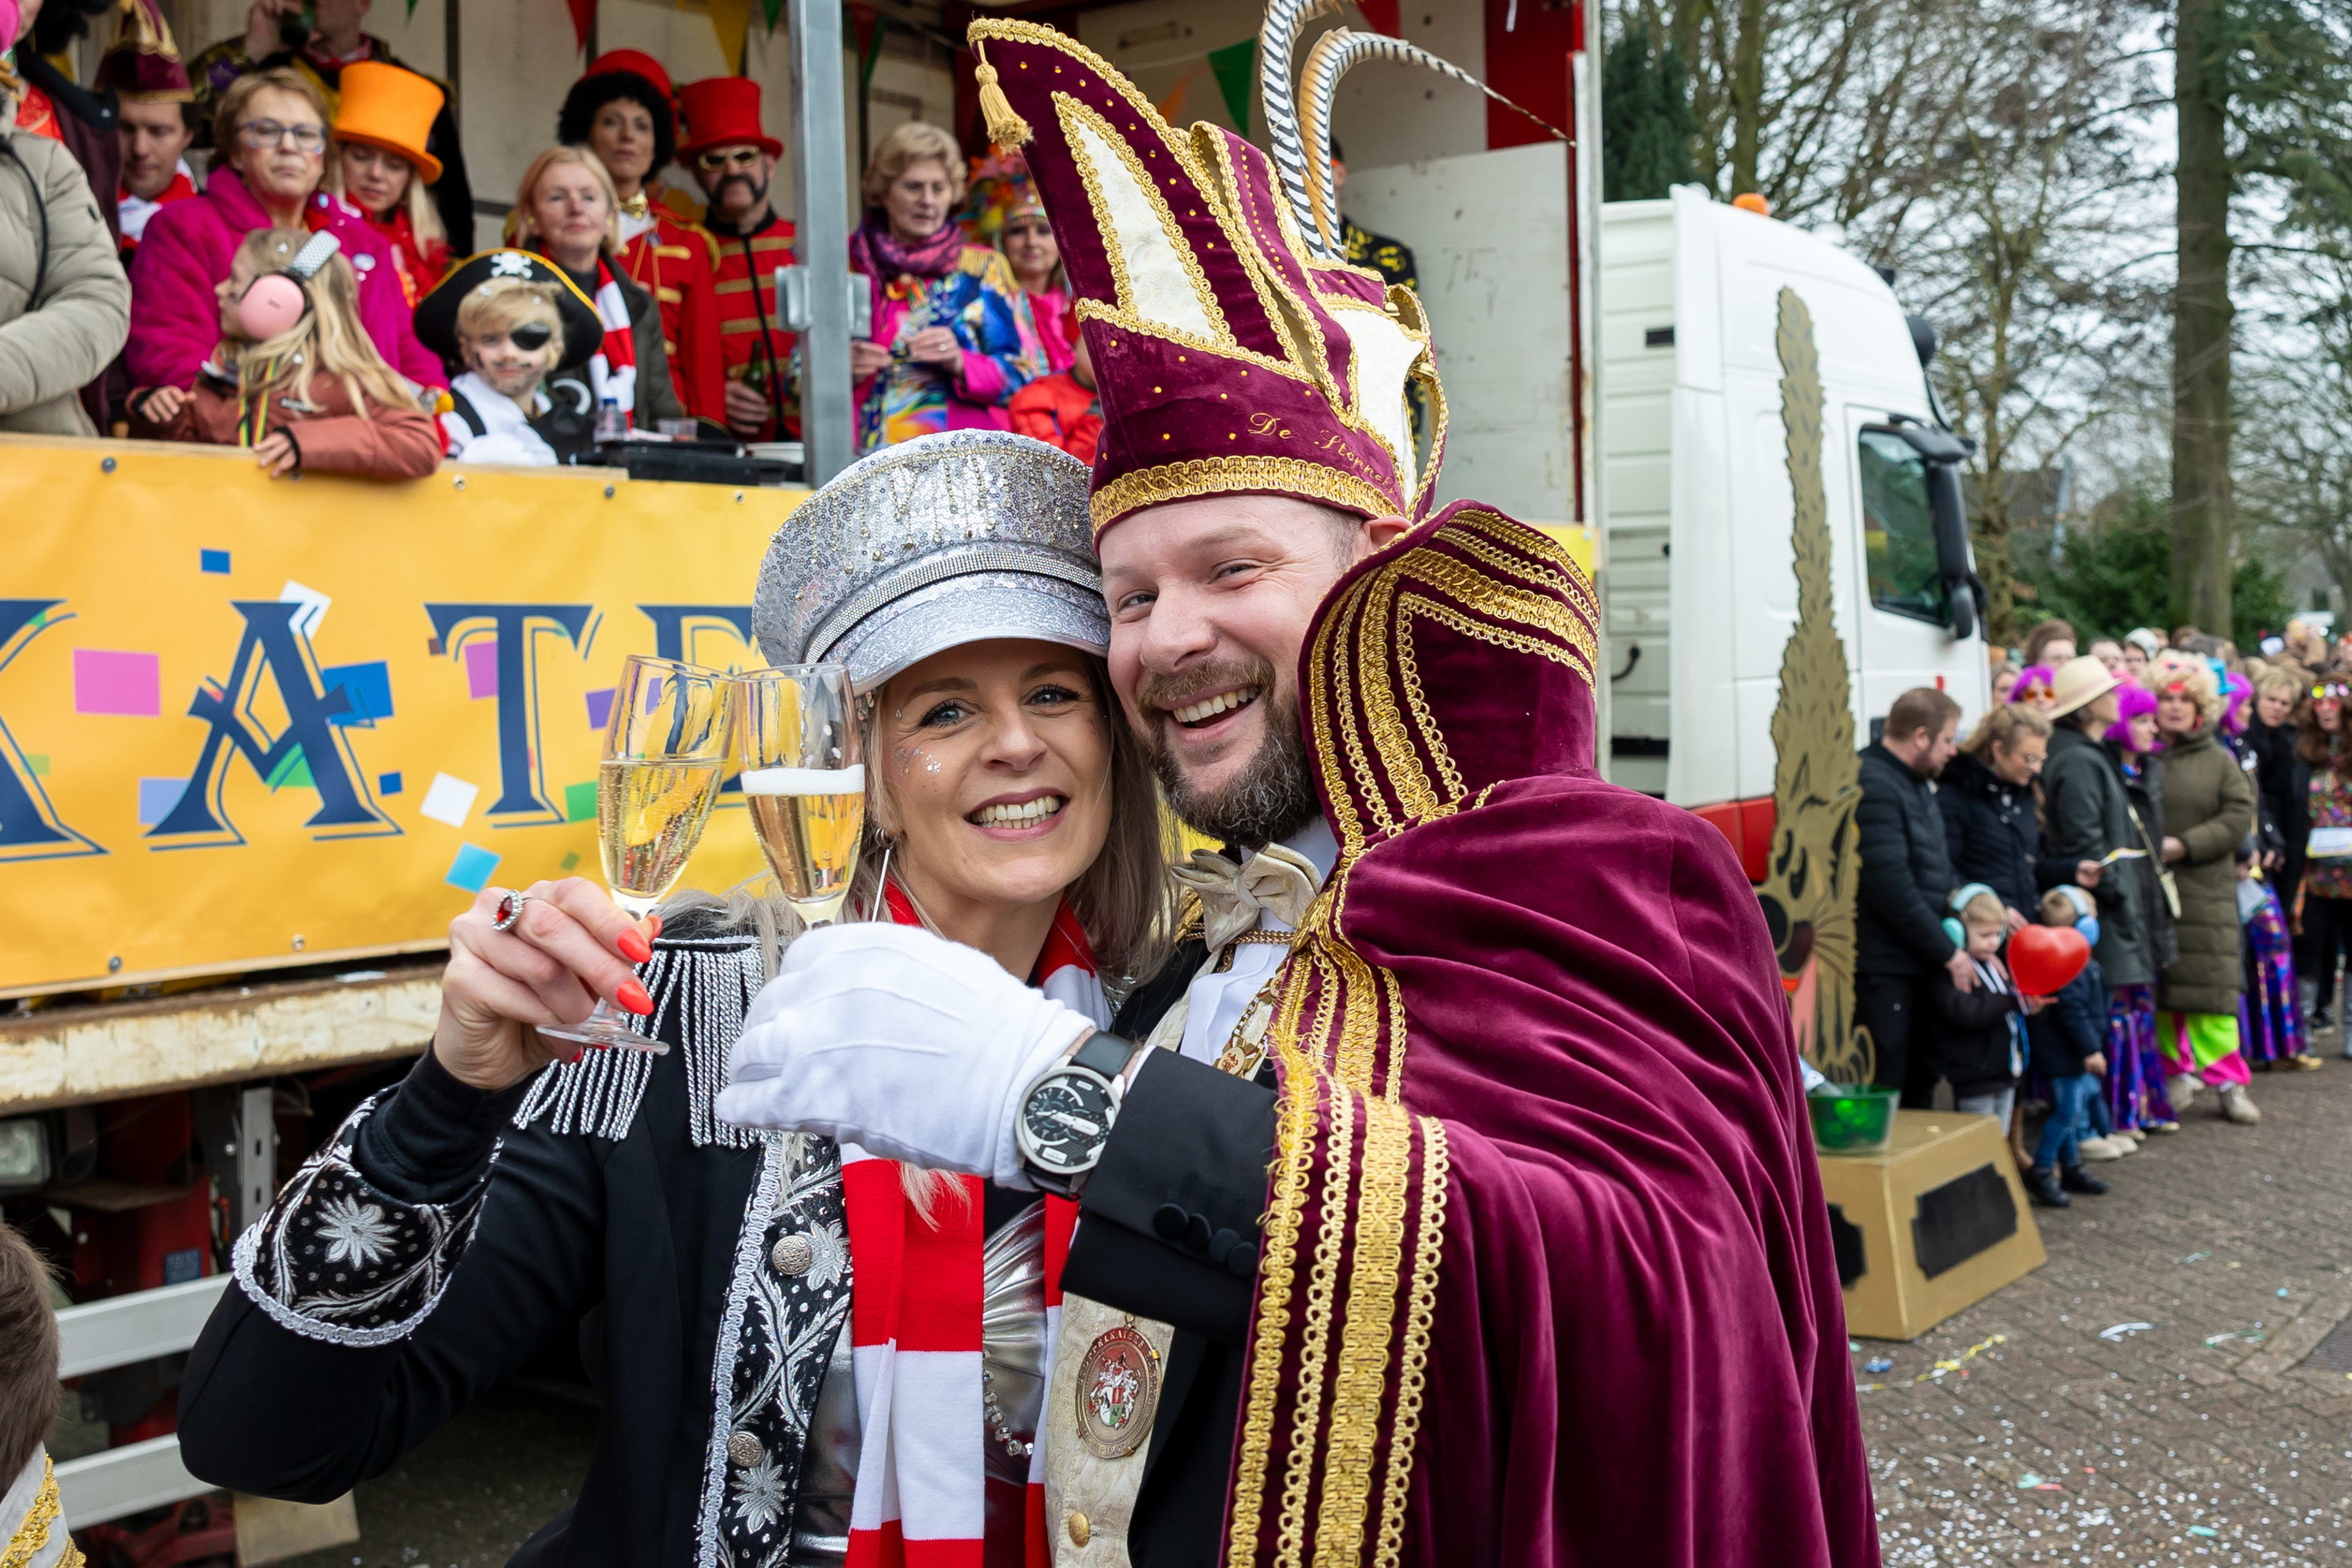 ZIEN: Inge vraagt haar prins carnaval ten huwelijk tijdens optocht